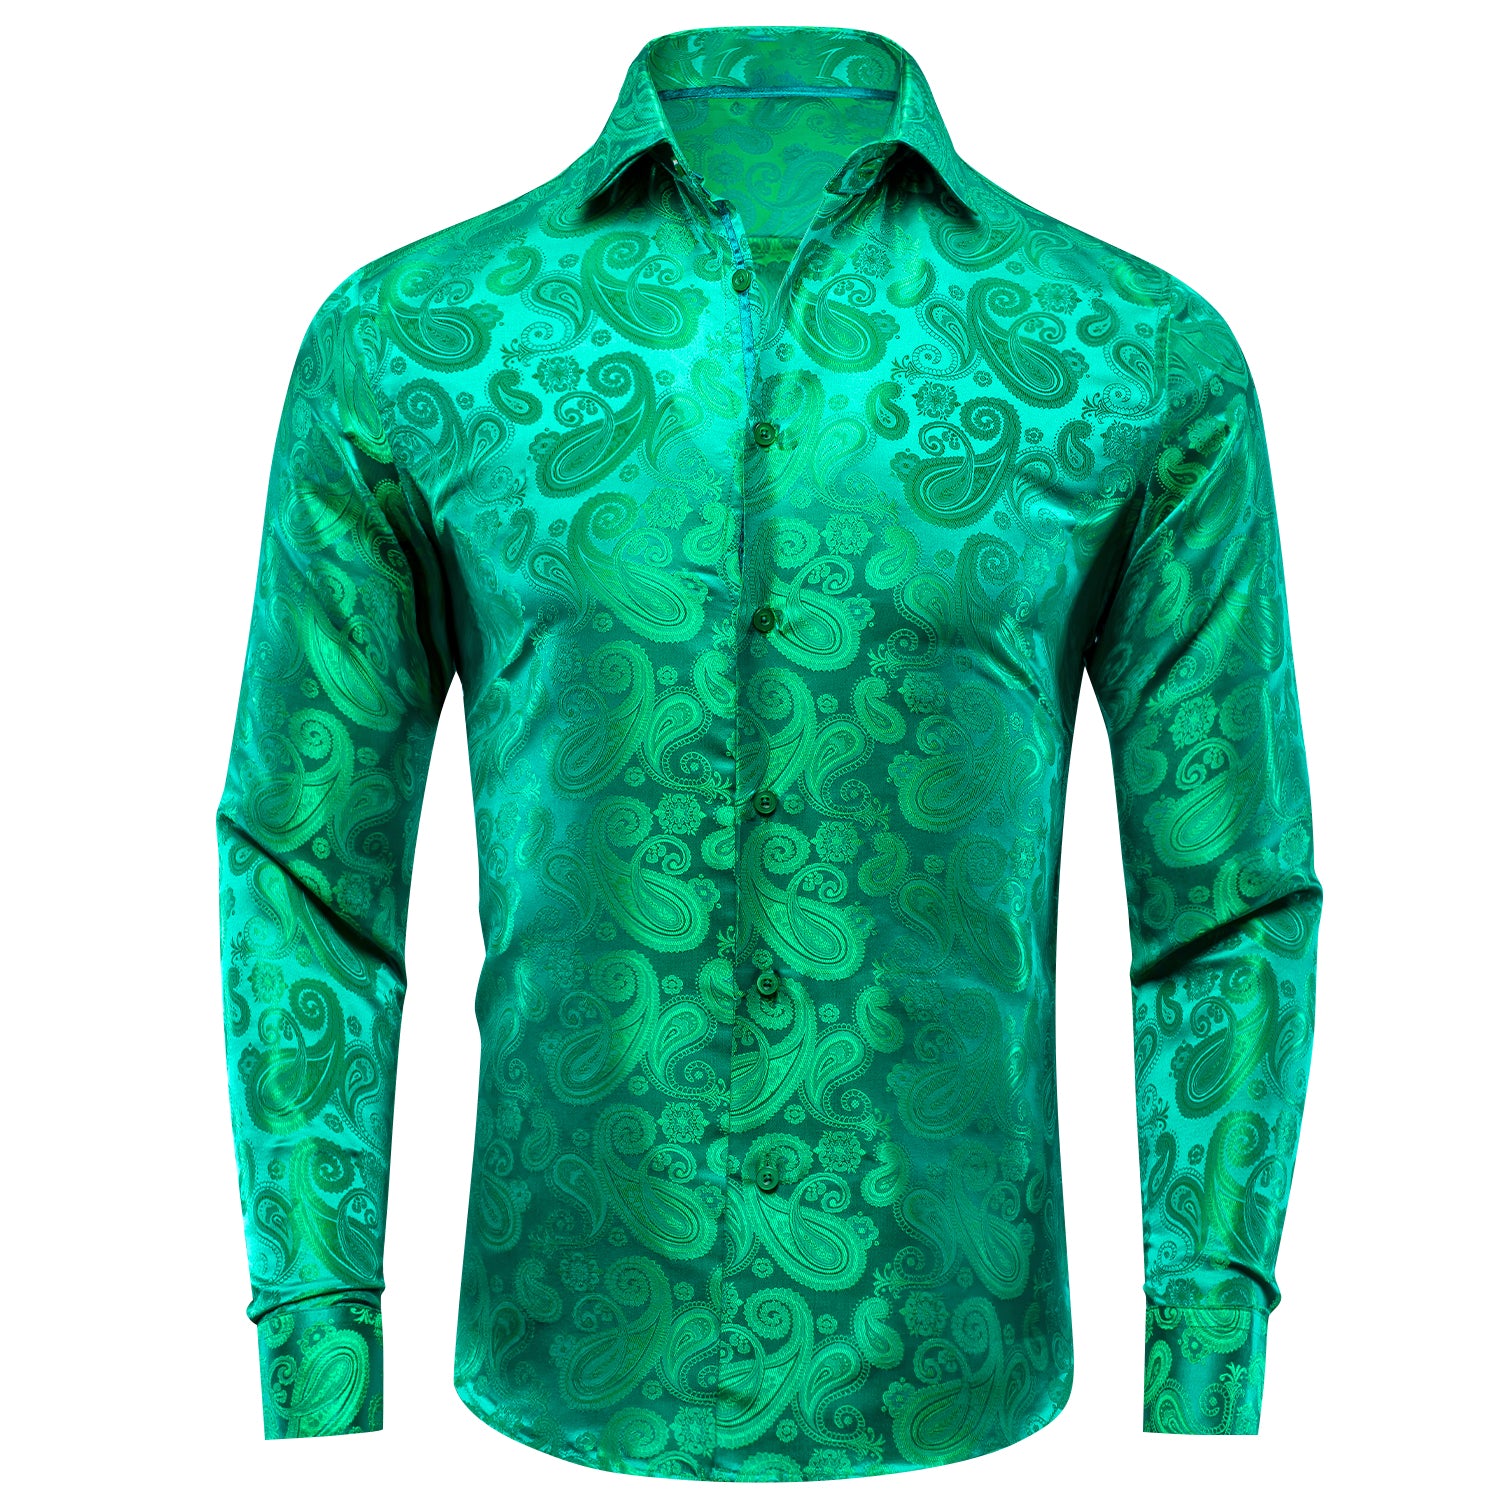 Grass Green Paisley Silk Men's Long Sleeve Shirt Casual